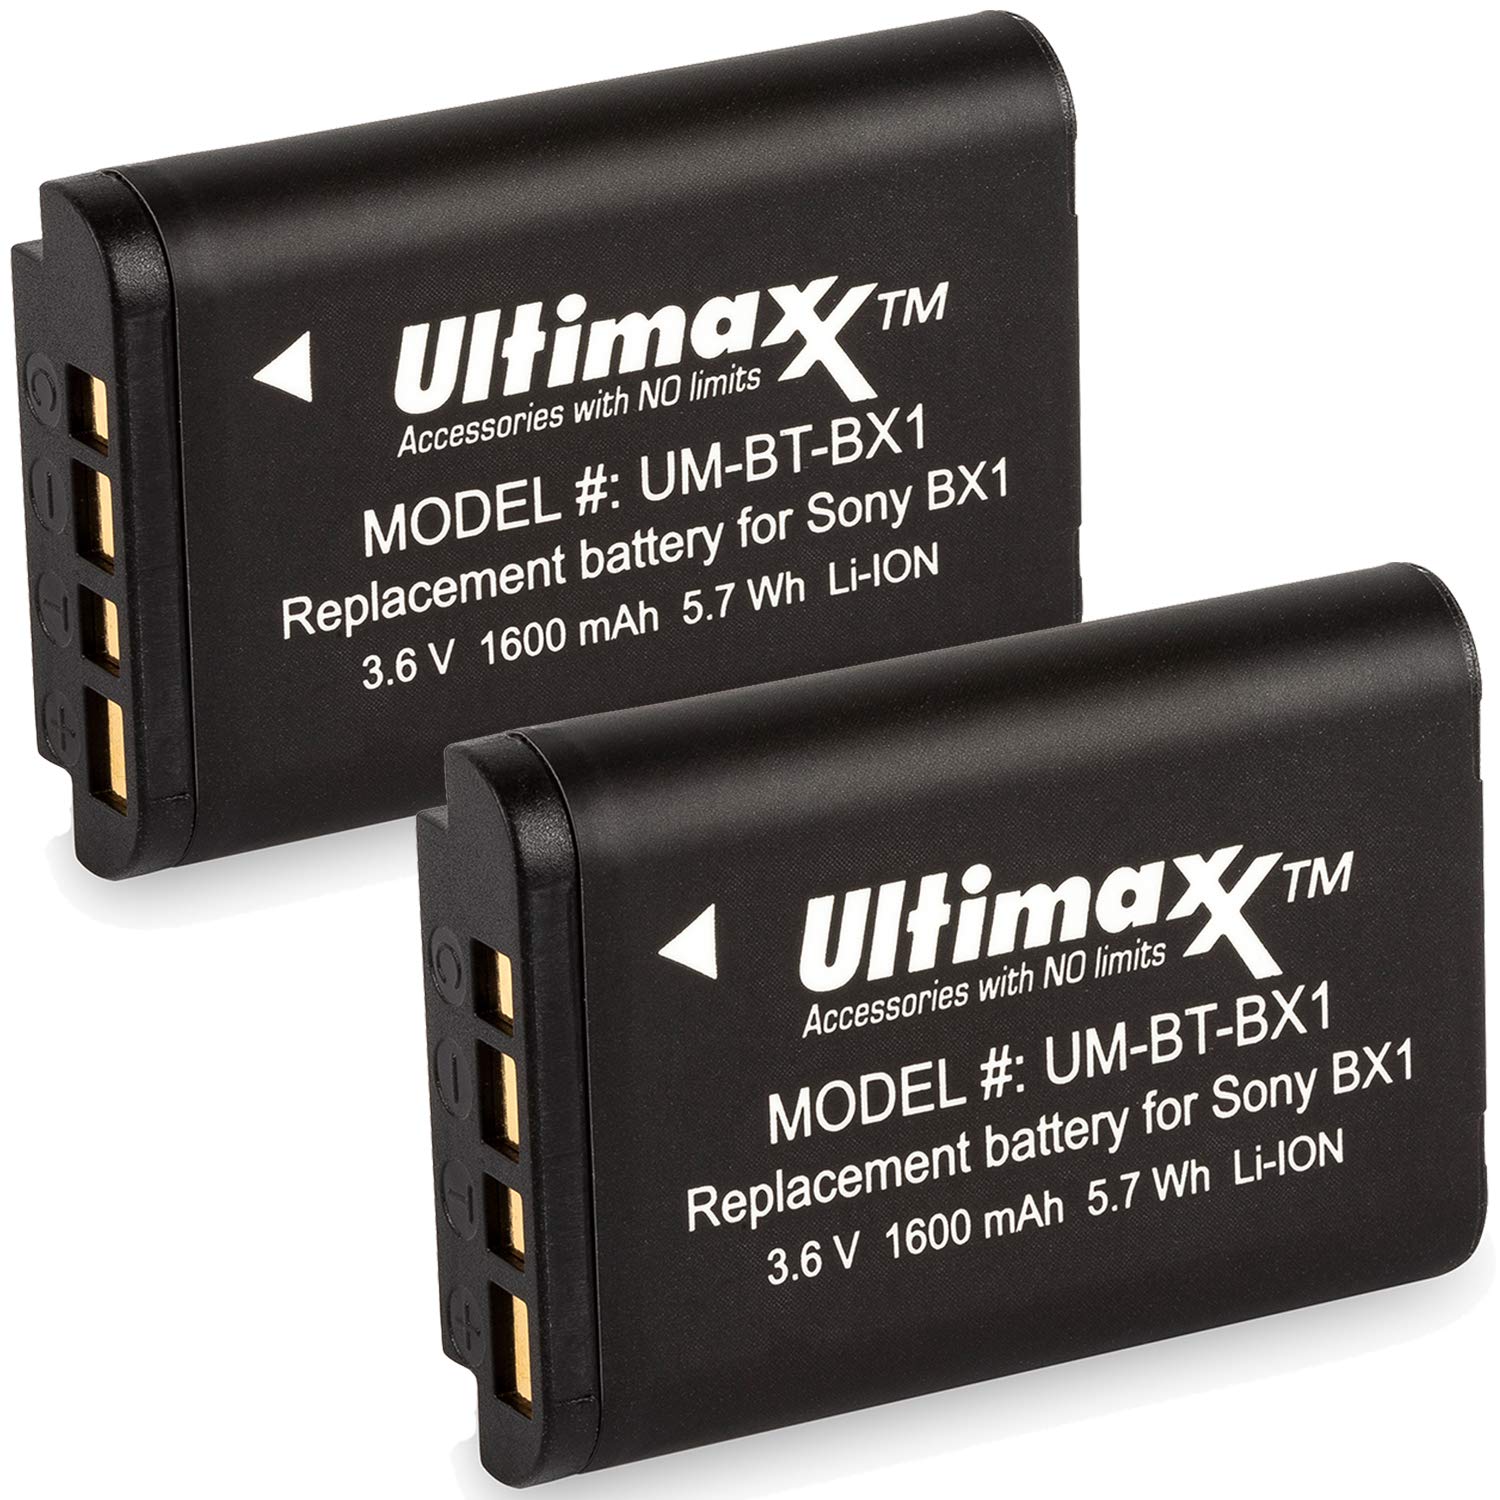 Ultimaxx BX1 Extended Life Bat